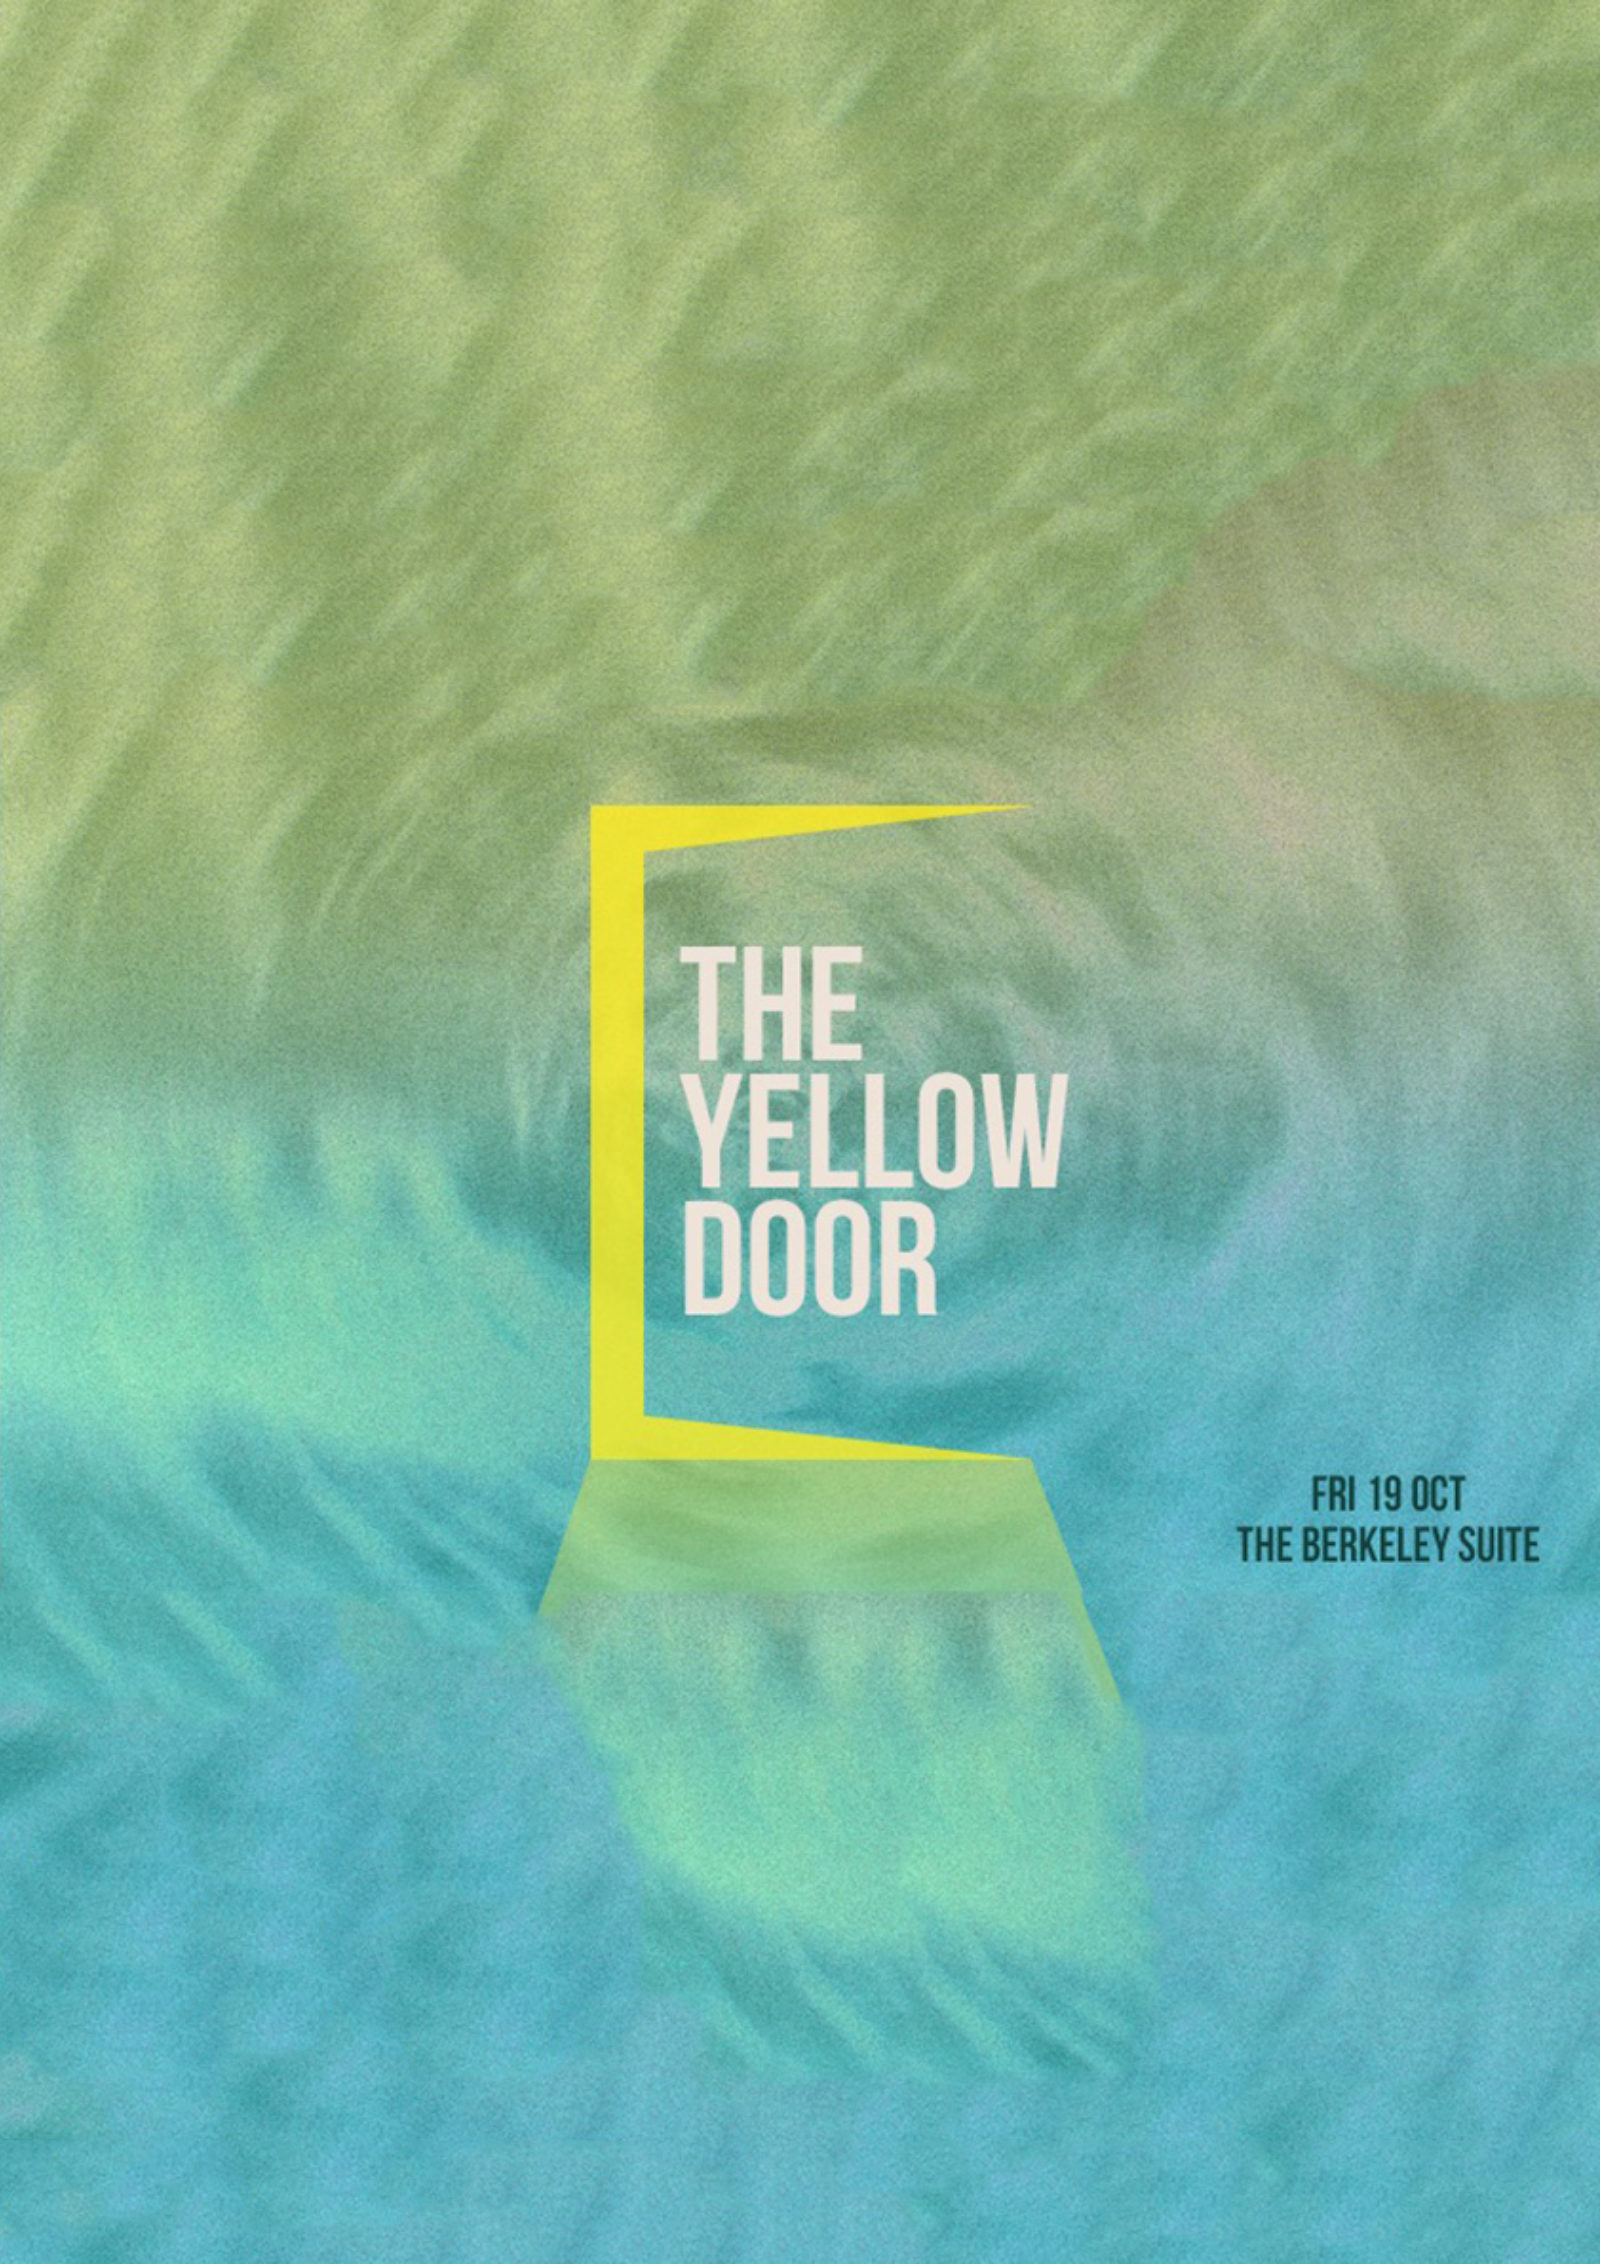 The Yellow Door - Oct 18